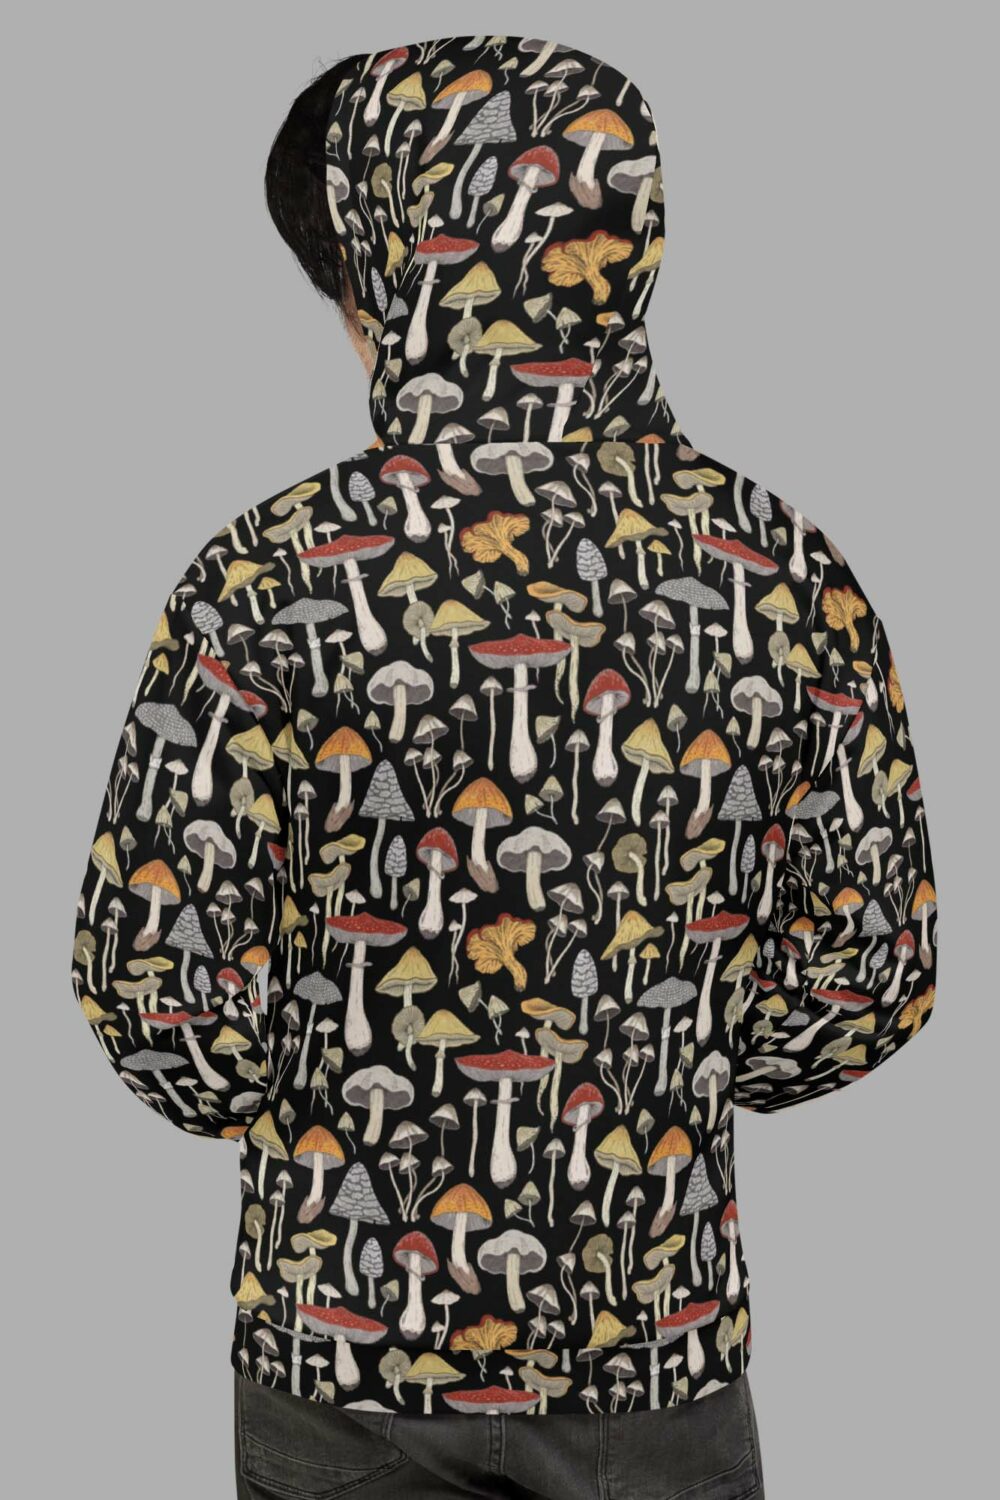 cosmic drifters hoodie back mushroom print